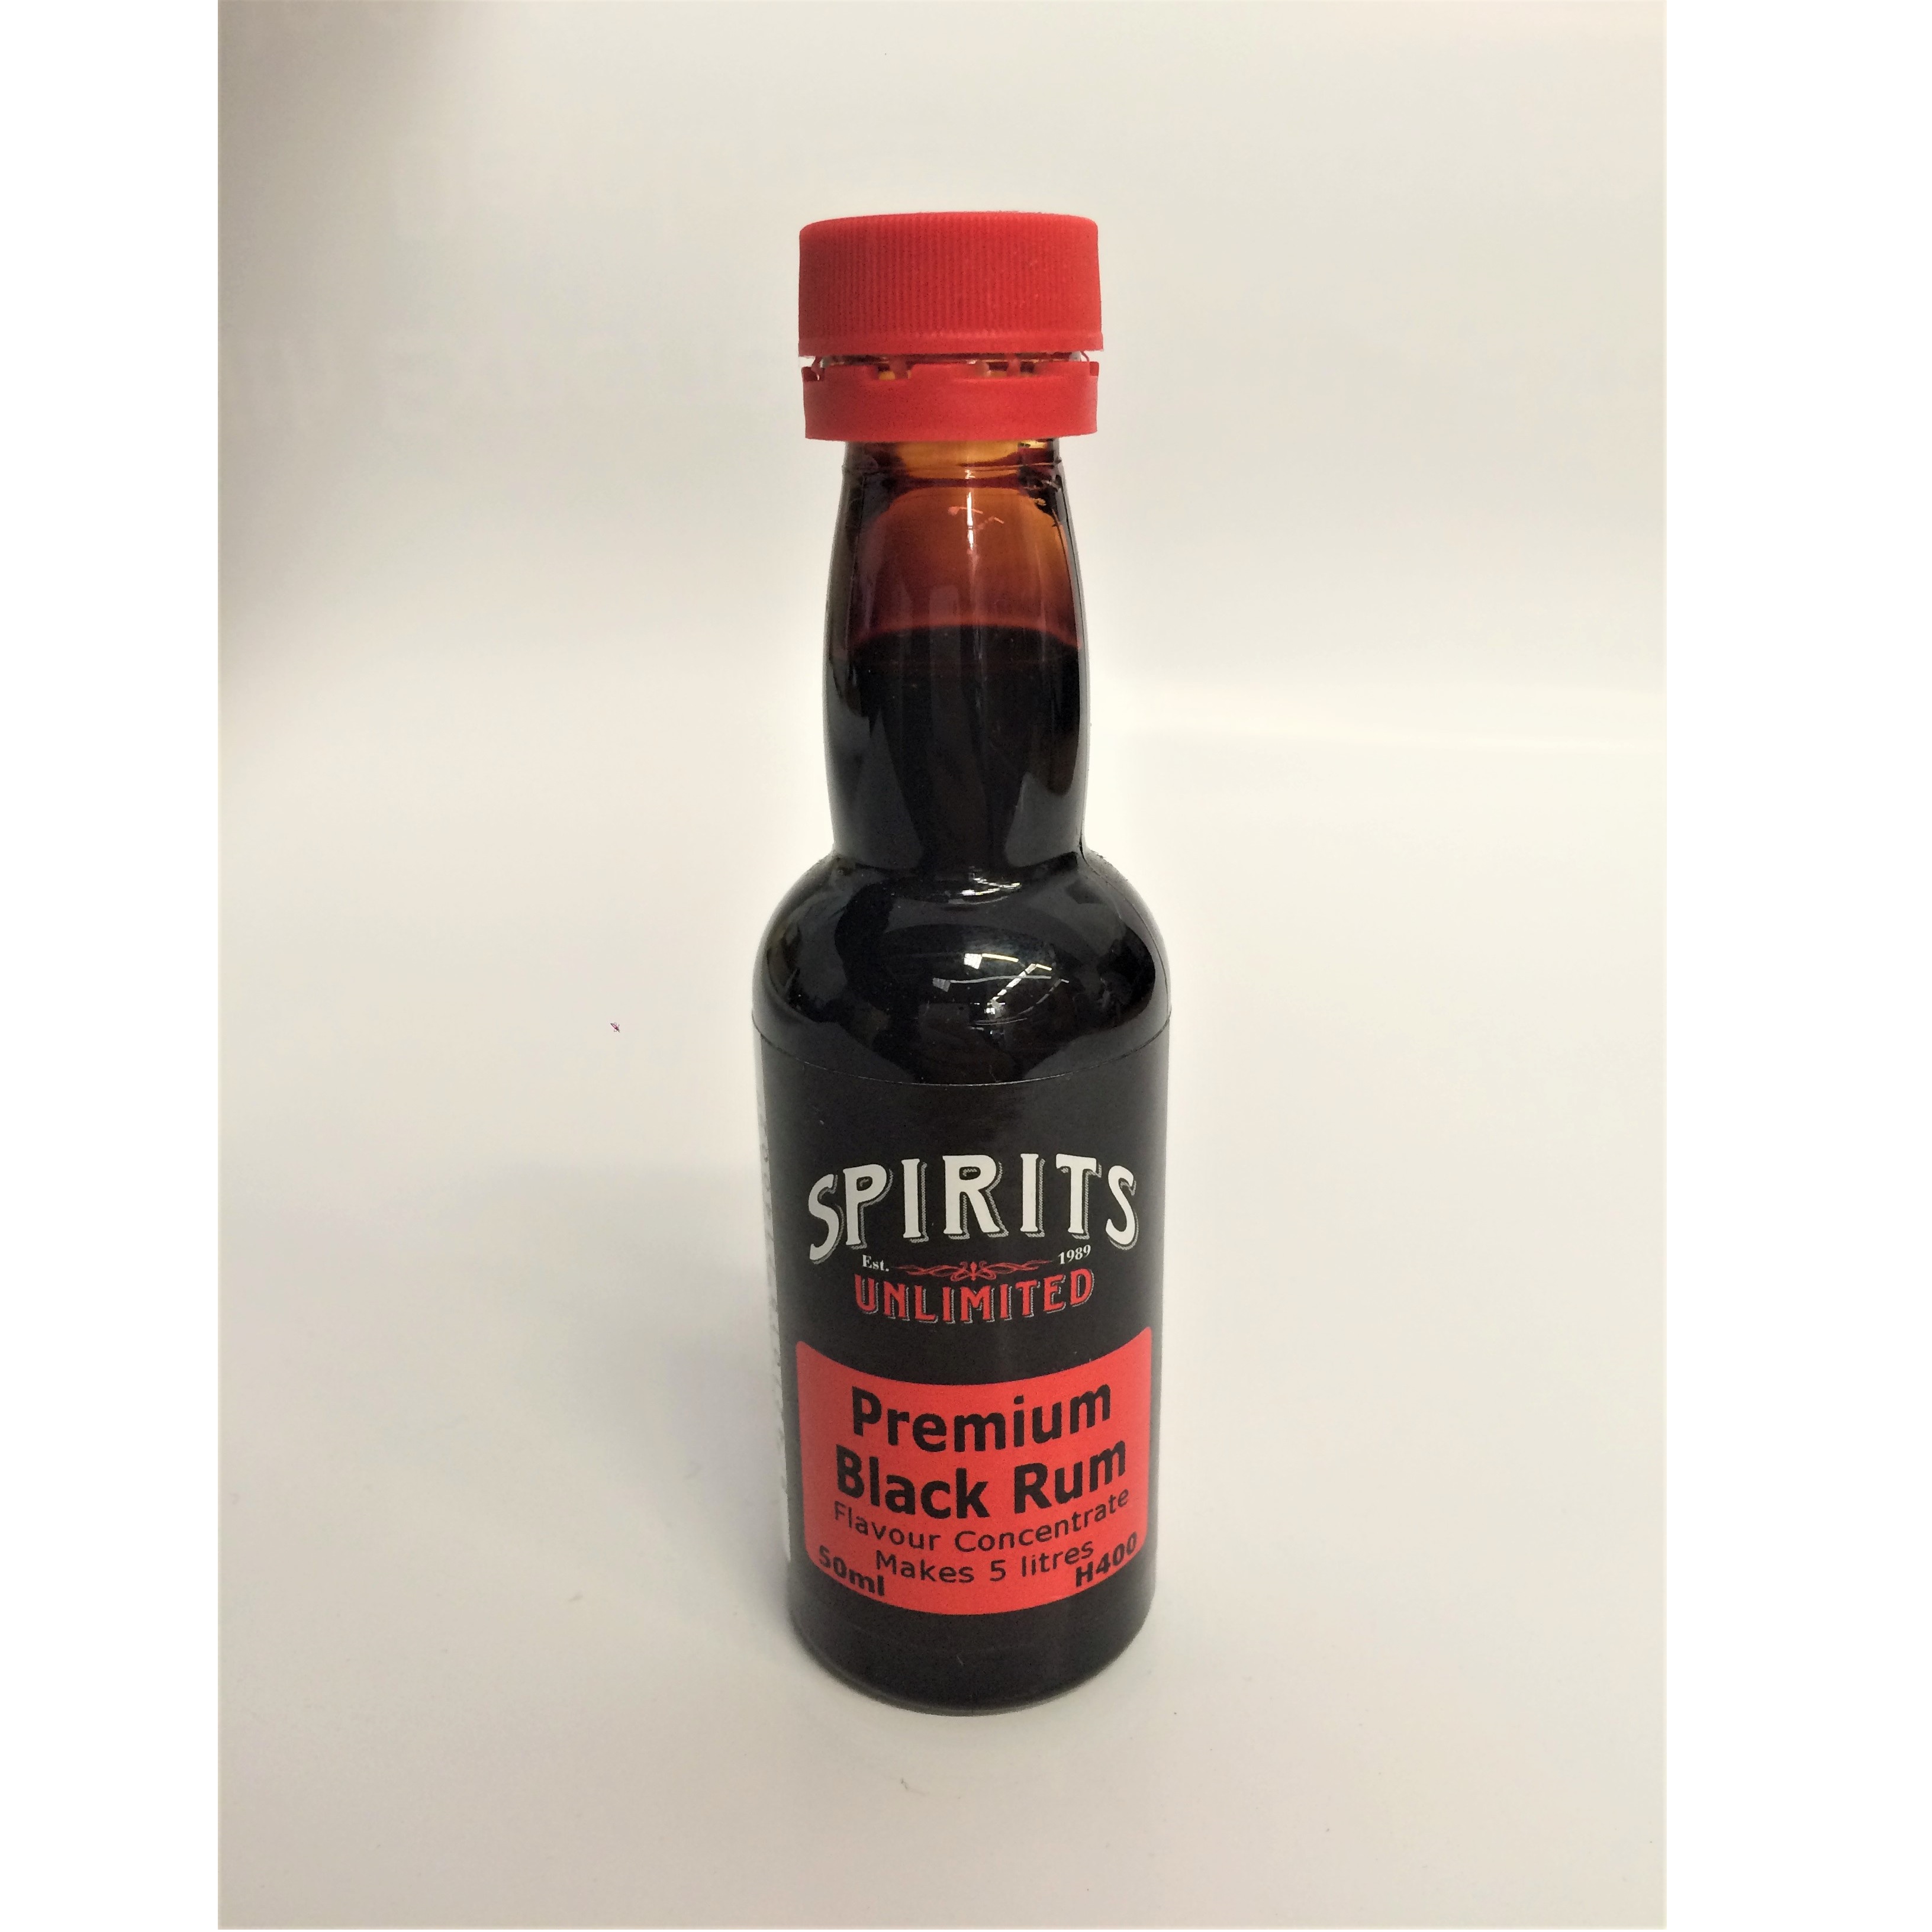 Spirits Unlimited Premium Black Rum Makes 5 litres UBREW4U